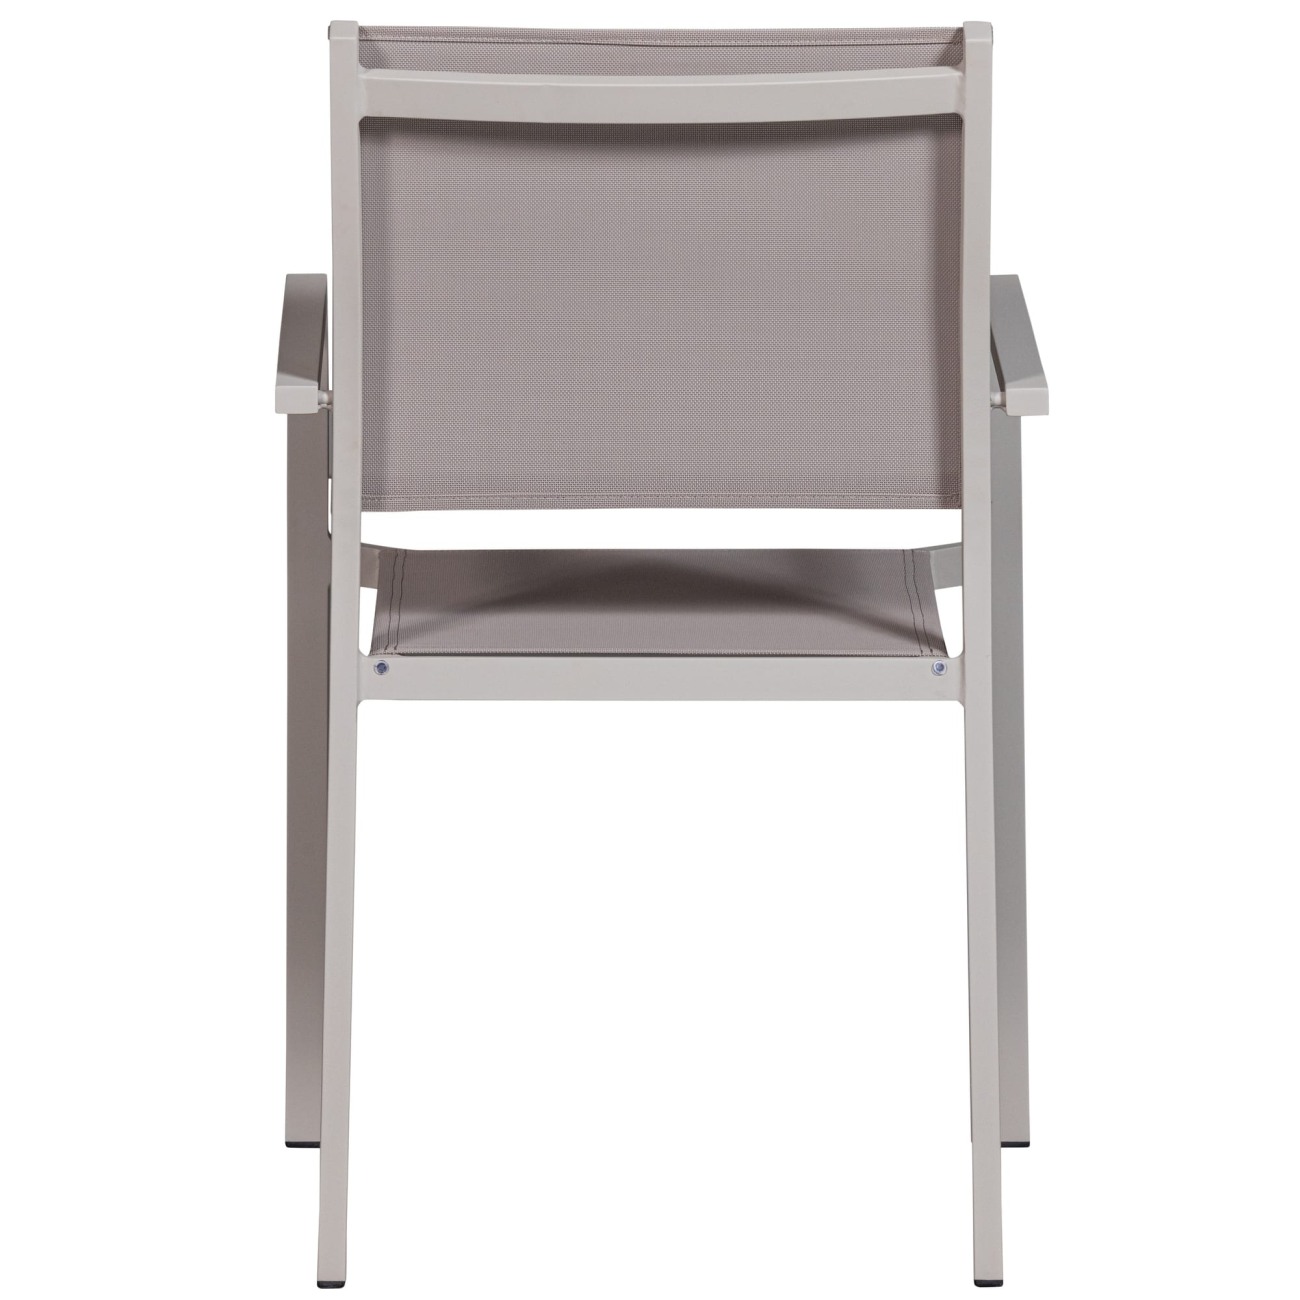 Der Gartenstuhl Fowl überzeugt mit seinem modernen Design. Gefertigt wurde er aus Textilene, welches einen Sand Farbton besitzt. Das Gestell ist aus Aluminium und hat eine Sand Farbe. Der Stuhl besitzt eine Sitzhöhe von 46 cm.